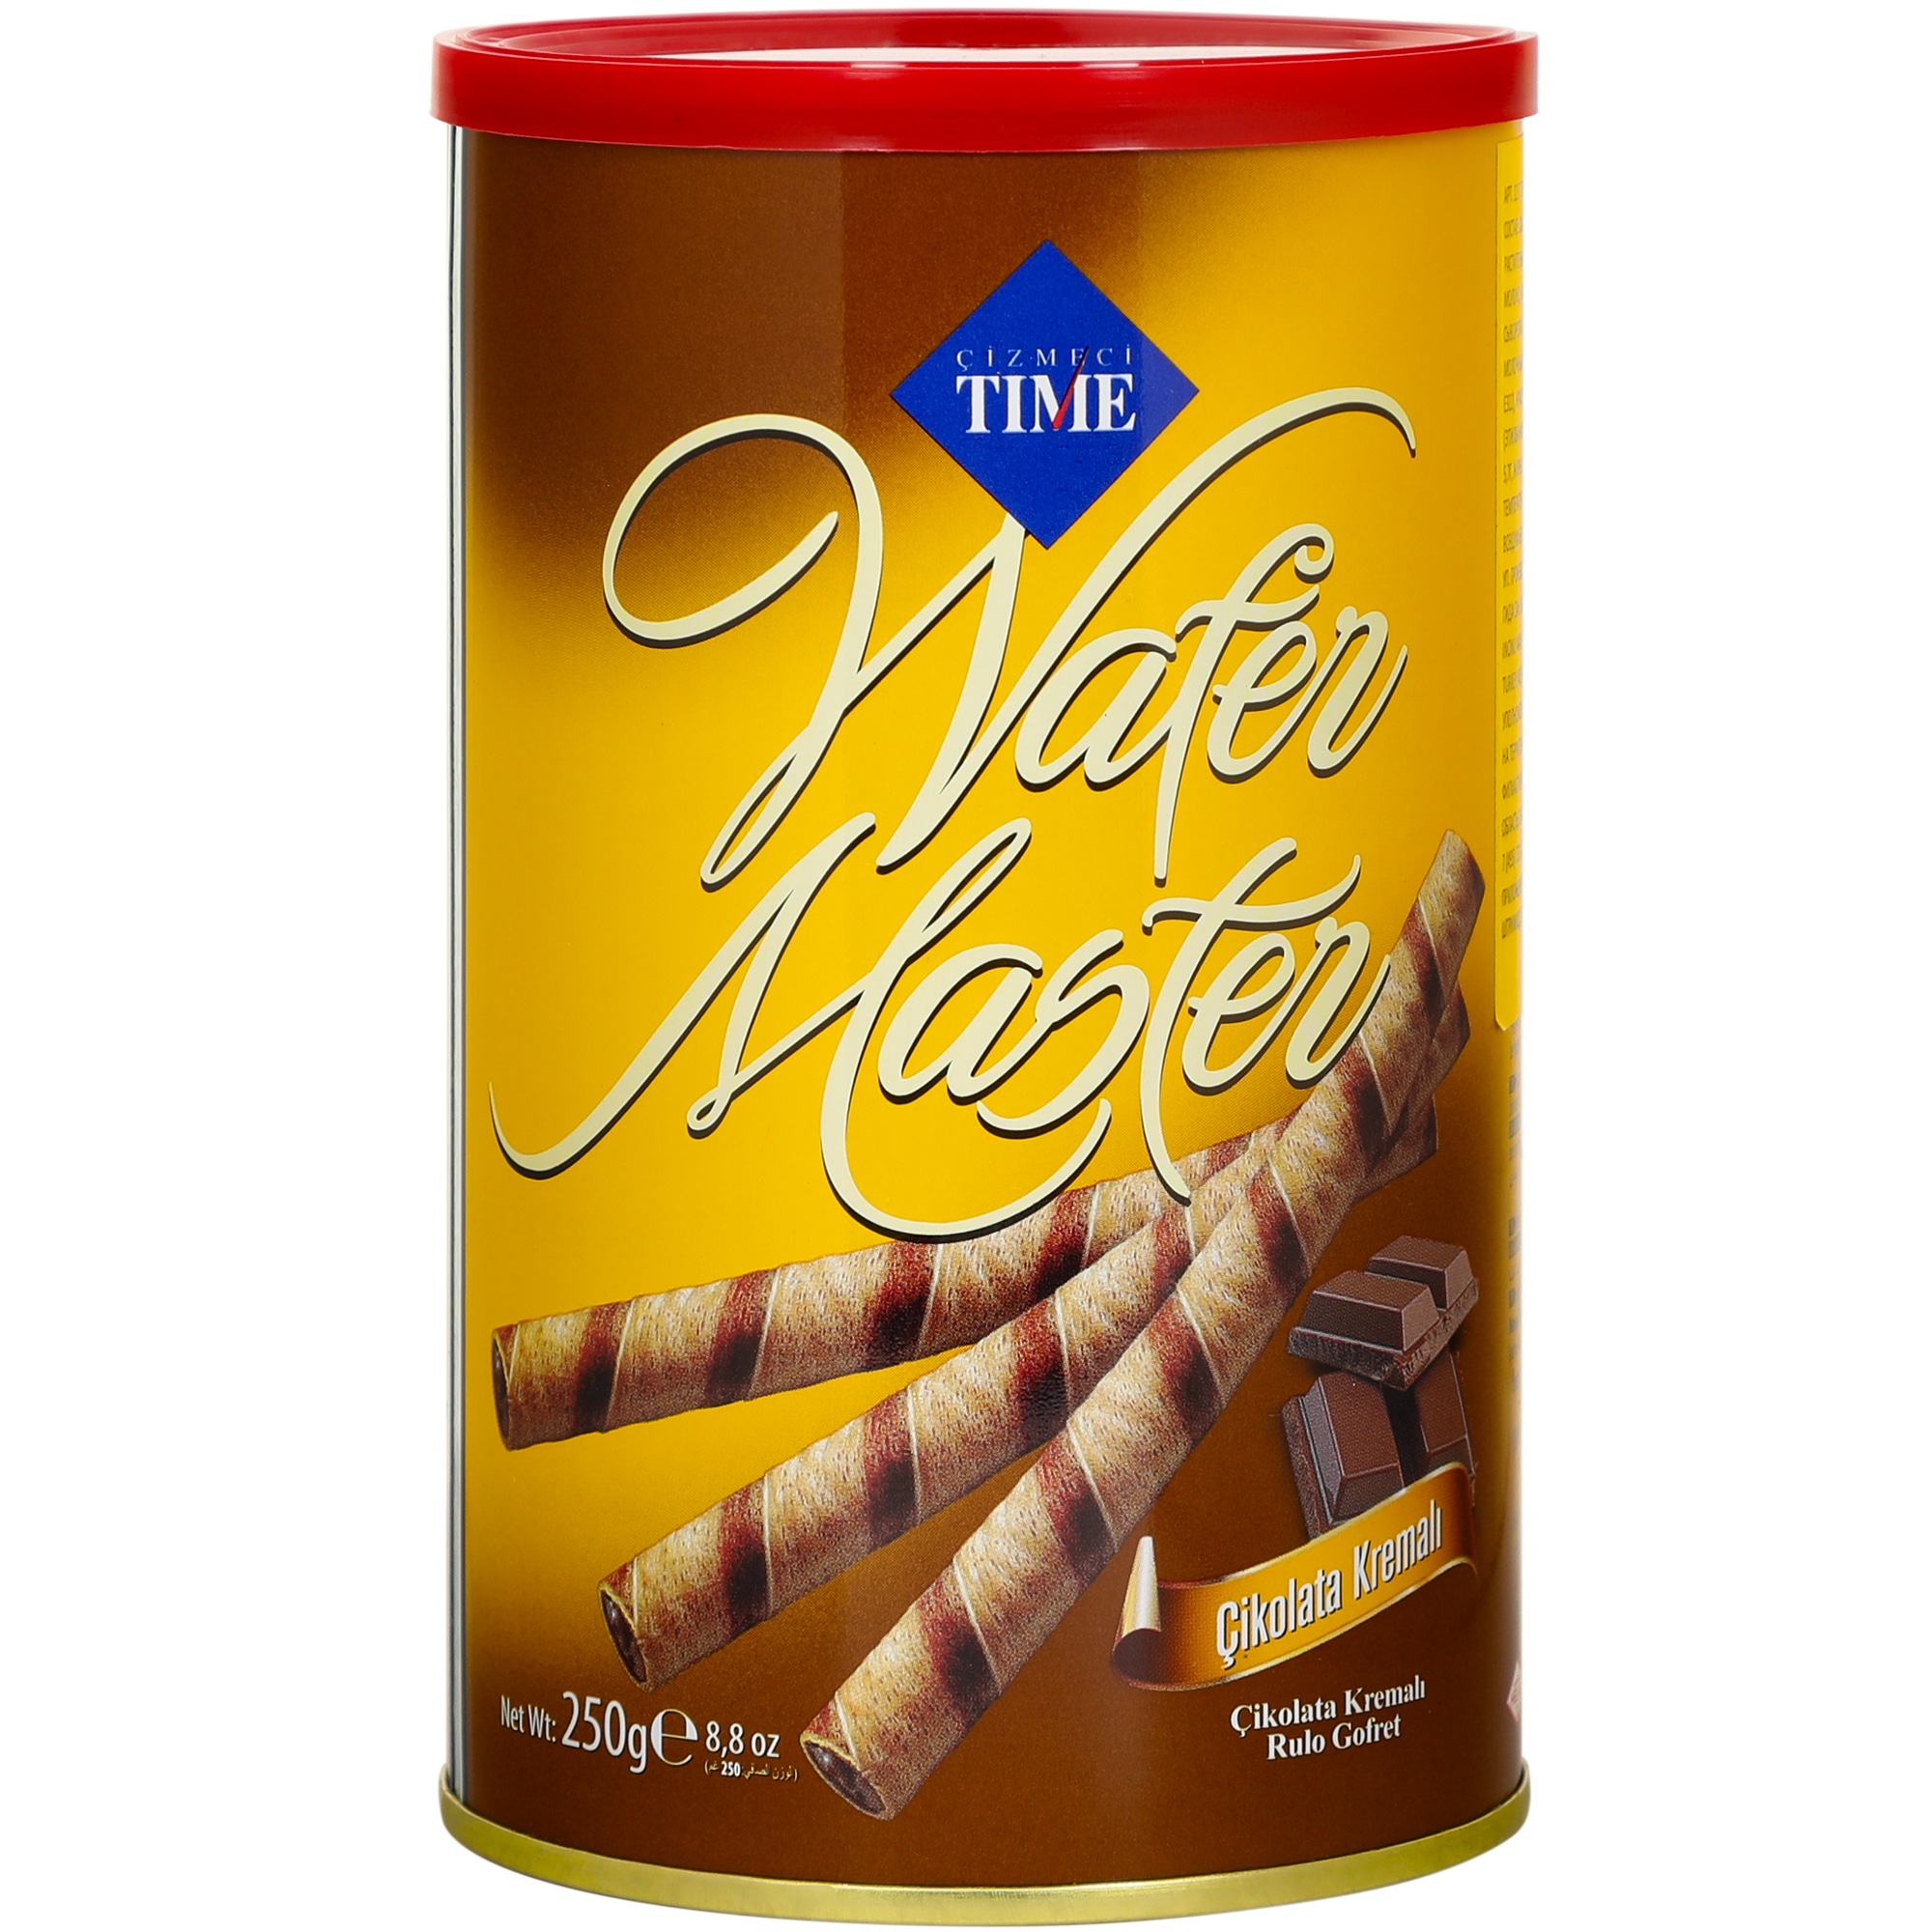 Трубочки Cizmeci Time вафельные wafer master шоколад, 250 г вафельные рулетики яшкино со вкусом сгущенного молока 160 гр